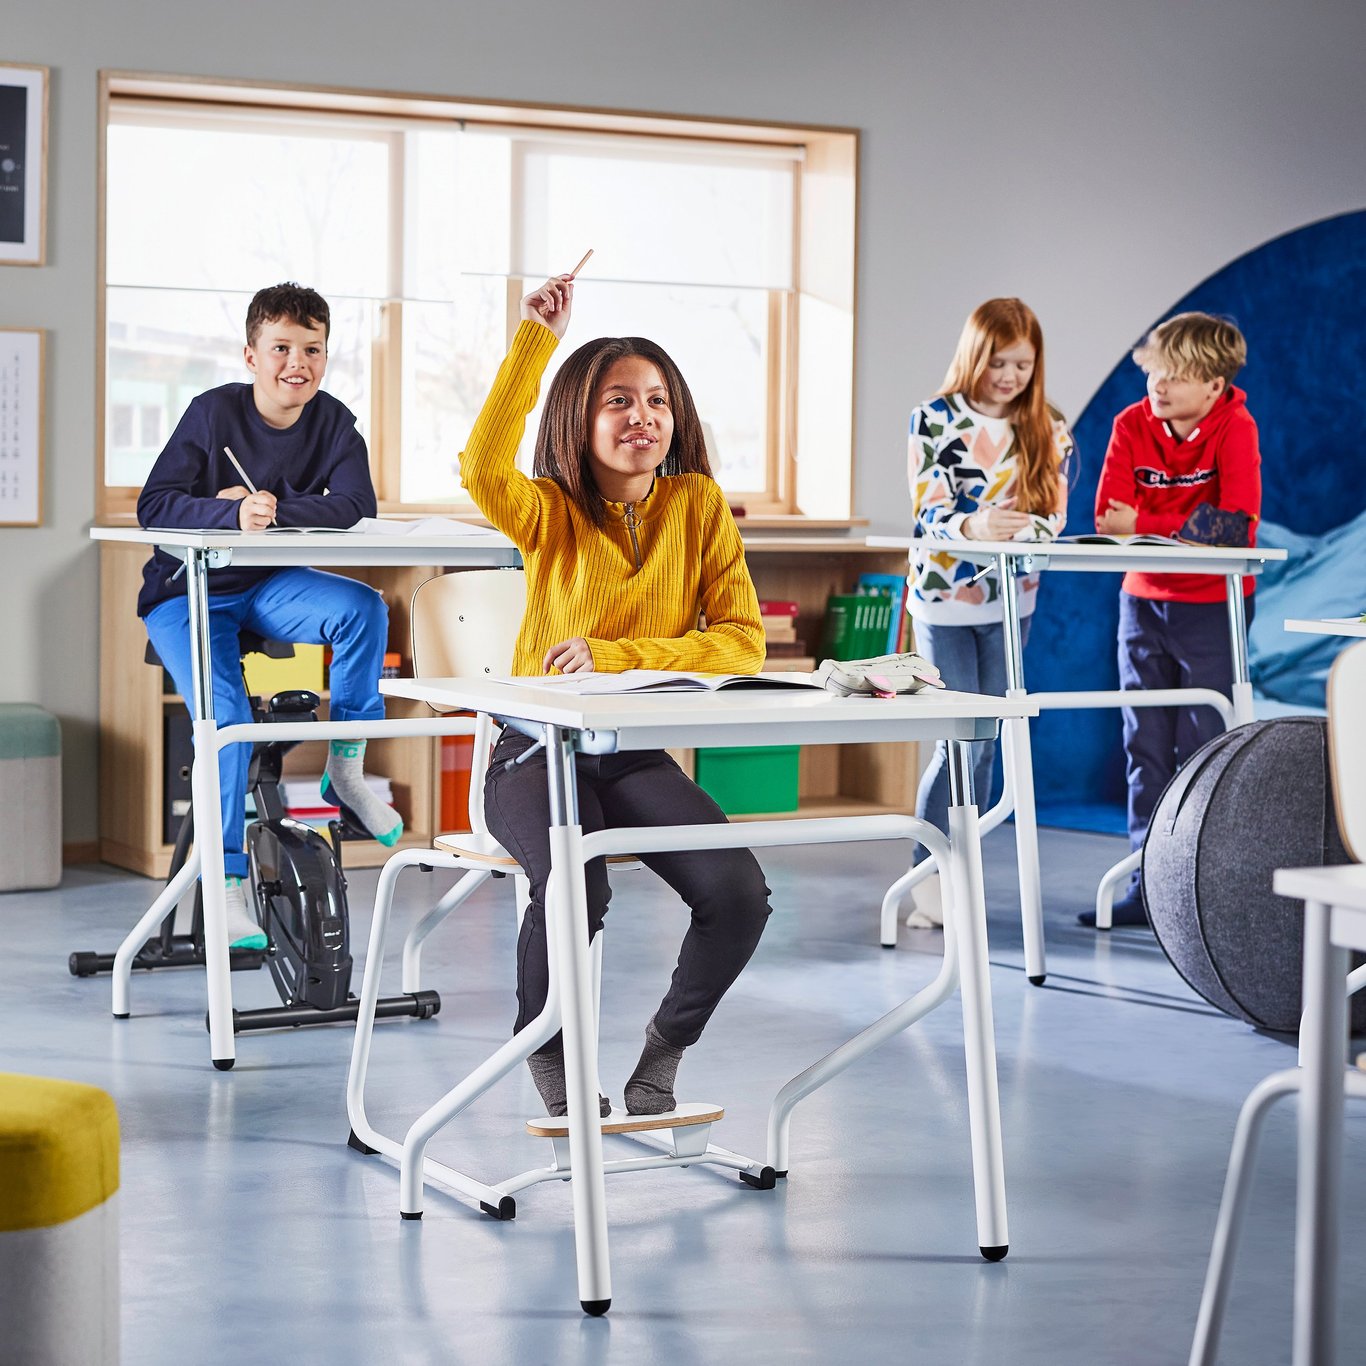 Lapsia luokkahuoneessa oppilaspöytiensä ääressä.